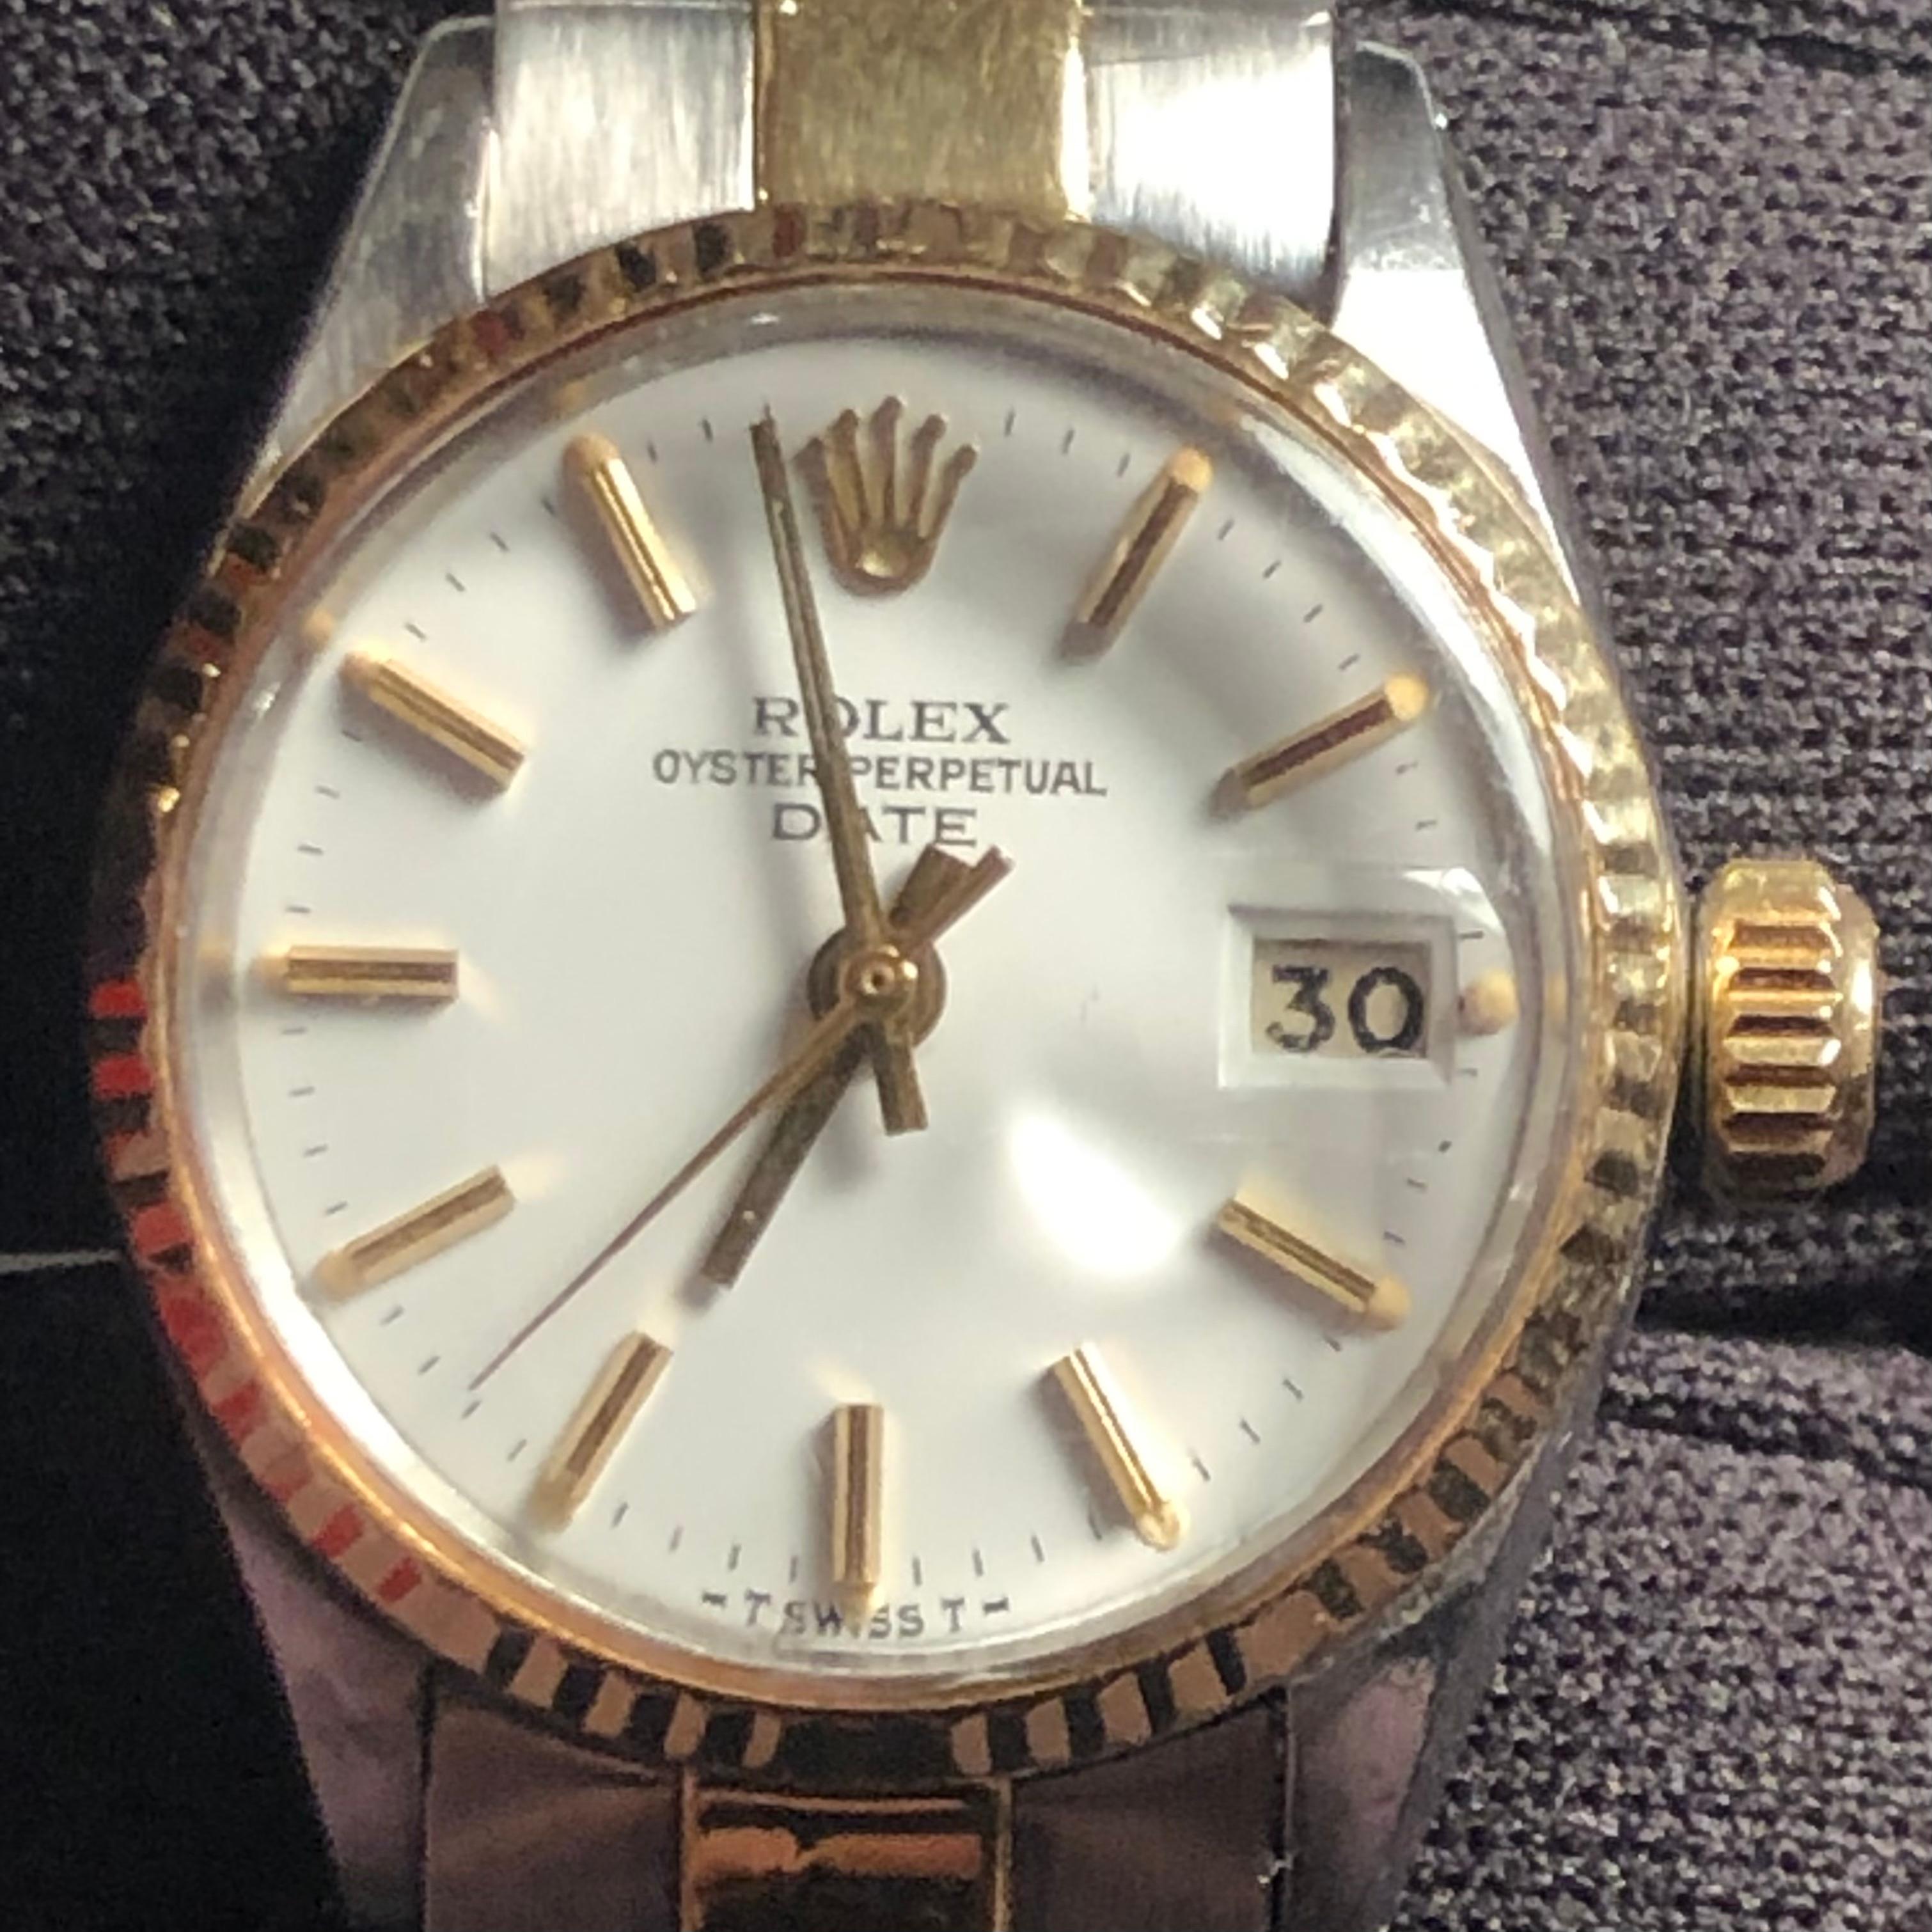 Rolex Oyster Perpetual 6517 two tone 14k Lady Date 26mm white dial ladies watch. Le mouvement Rolex fonctionne et il s'agit d'un mouvement automatique officiel Rolex à remontage automatique.

Ce garde-temps original et authentique de Rolex est doté